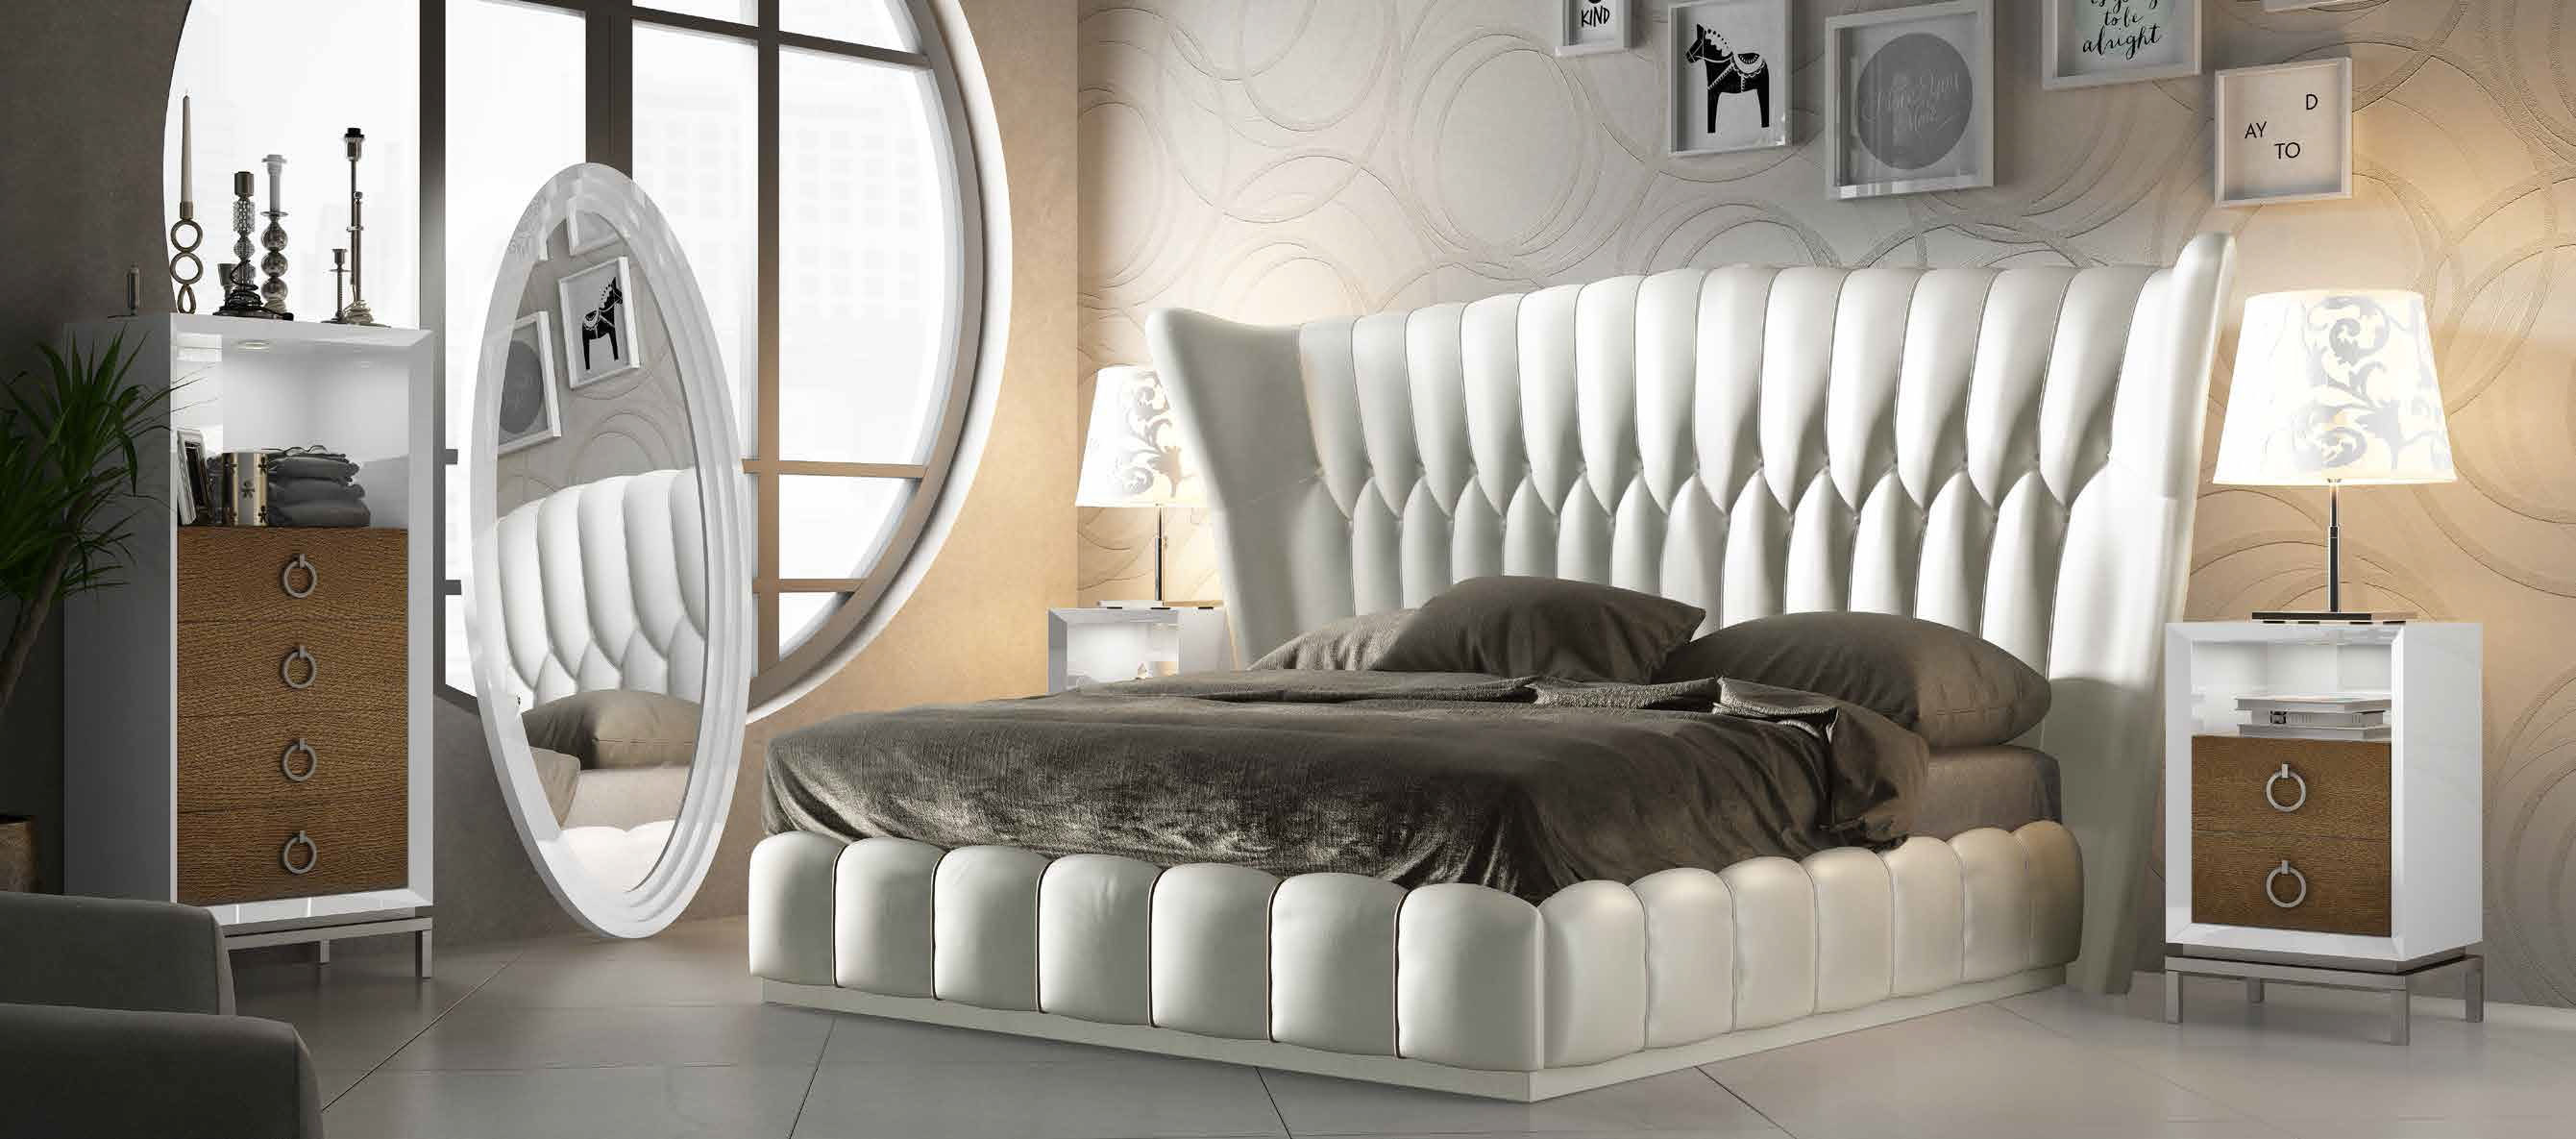 Bedroom Furniture Nightstands DOR 50